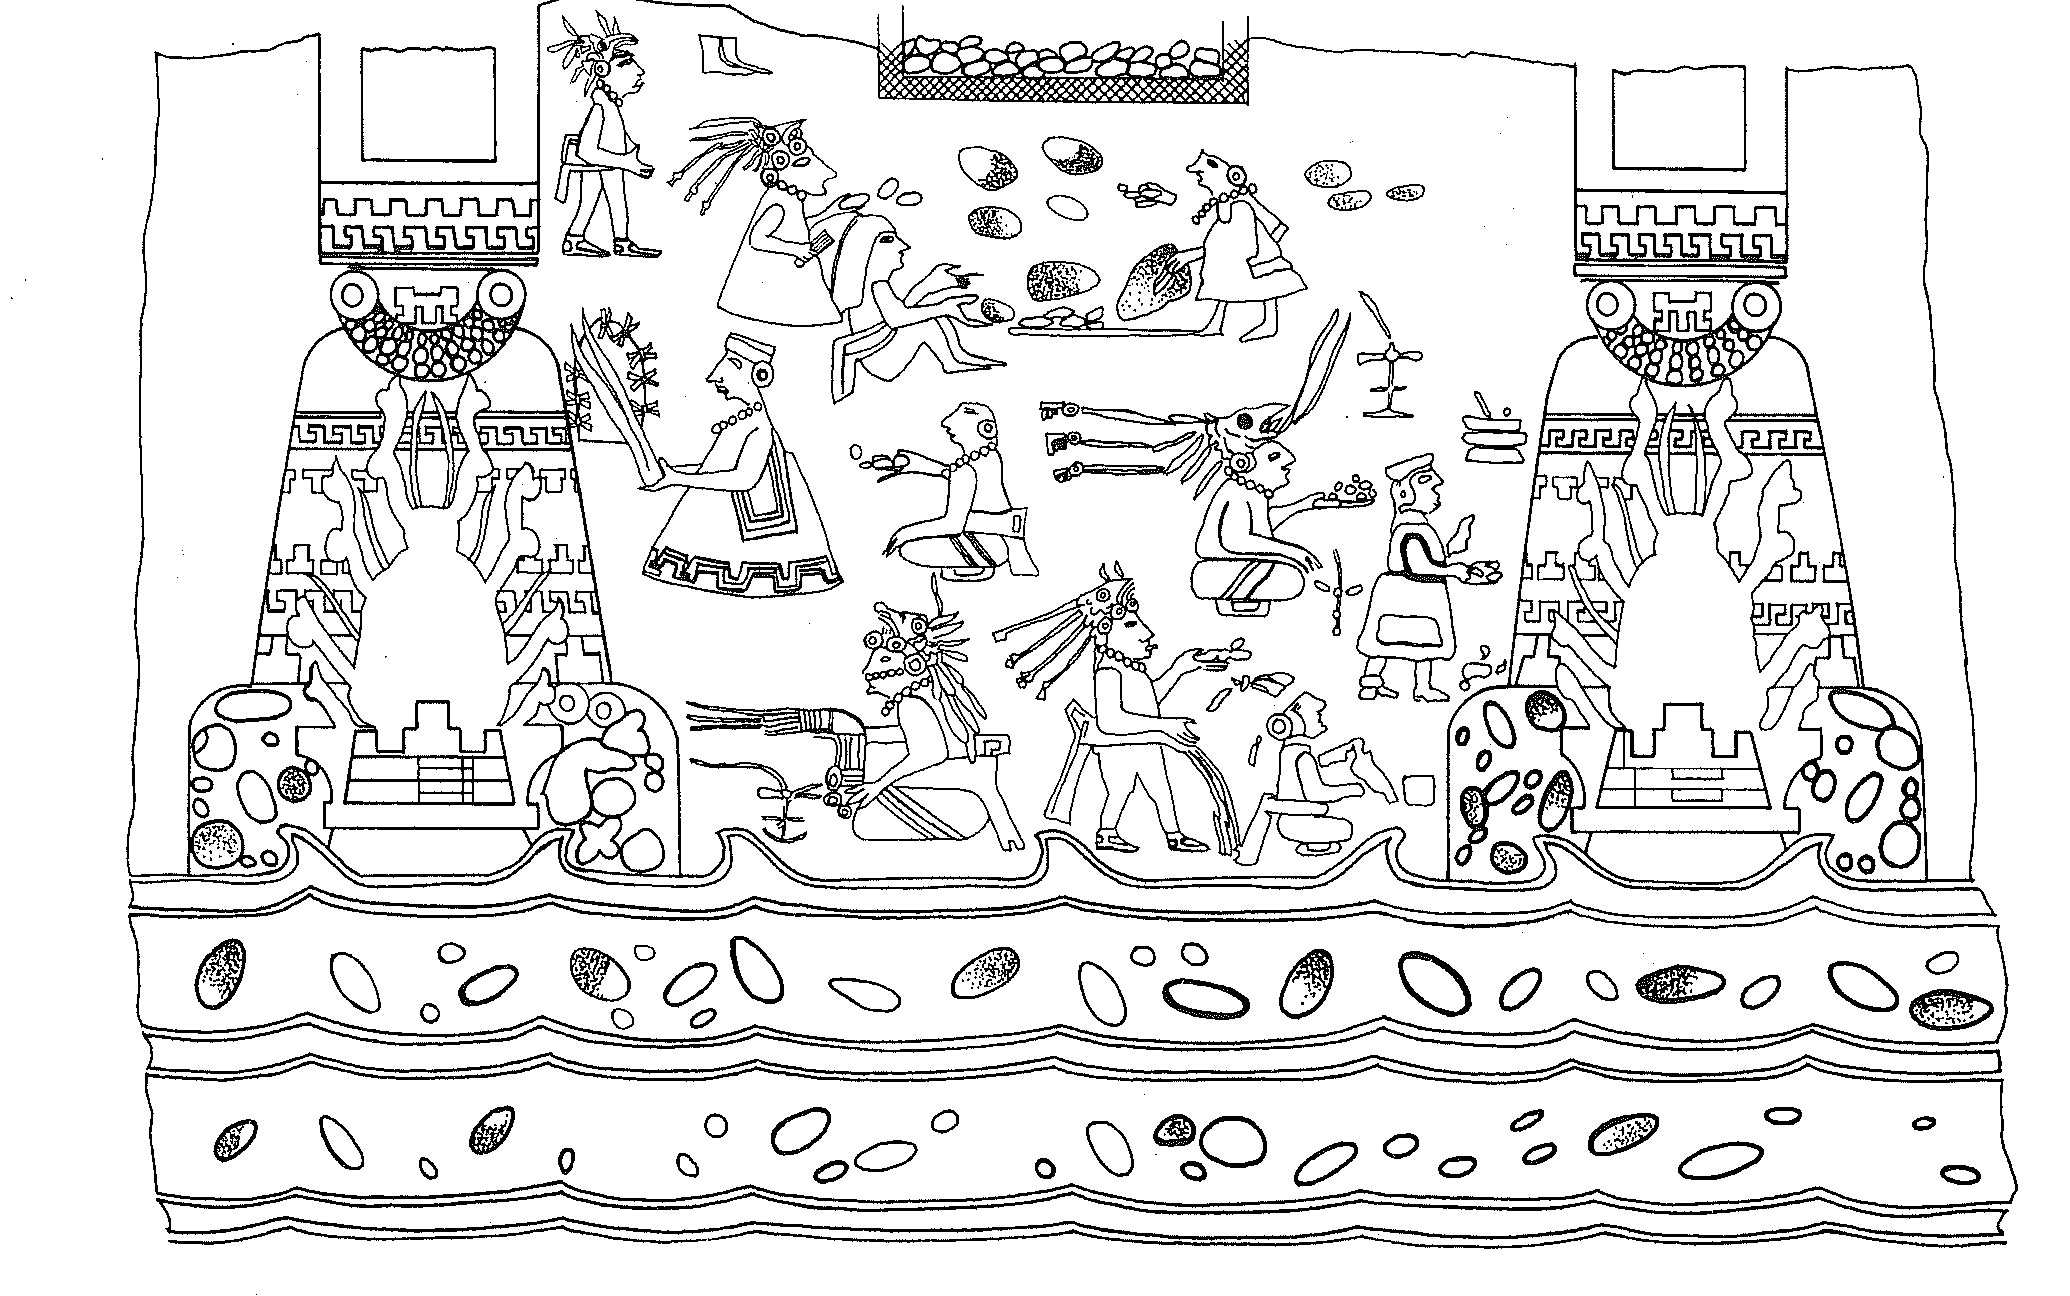 Domestic Ritual of Ancient Mesoamerica